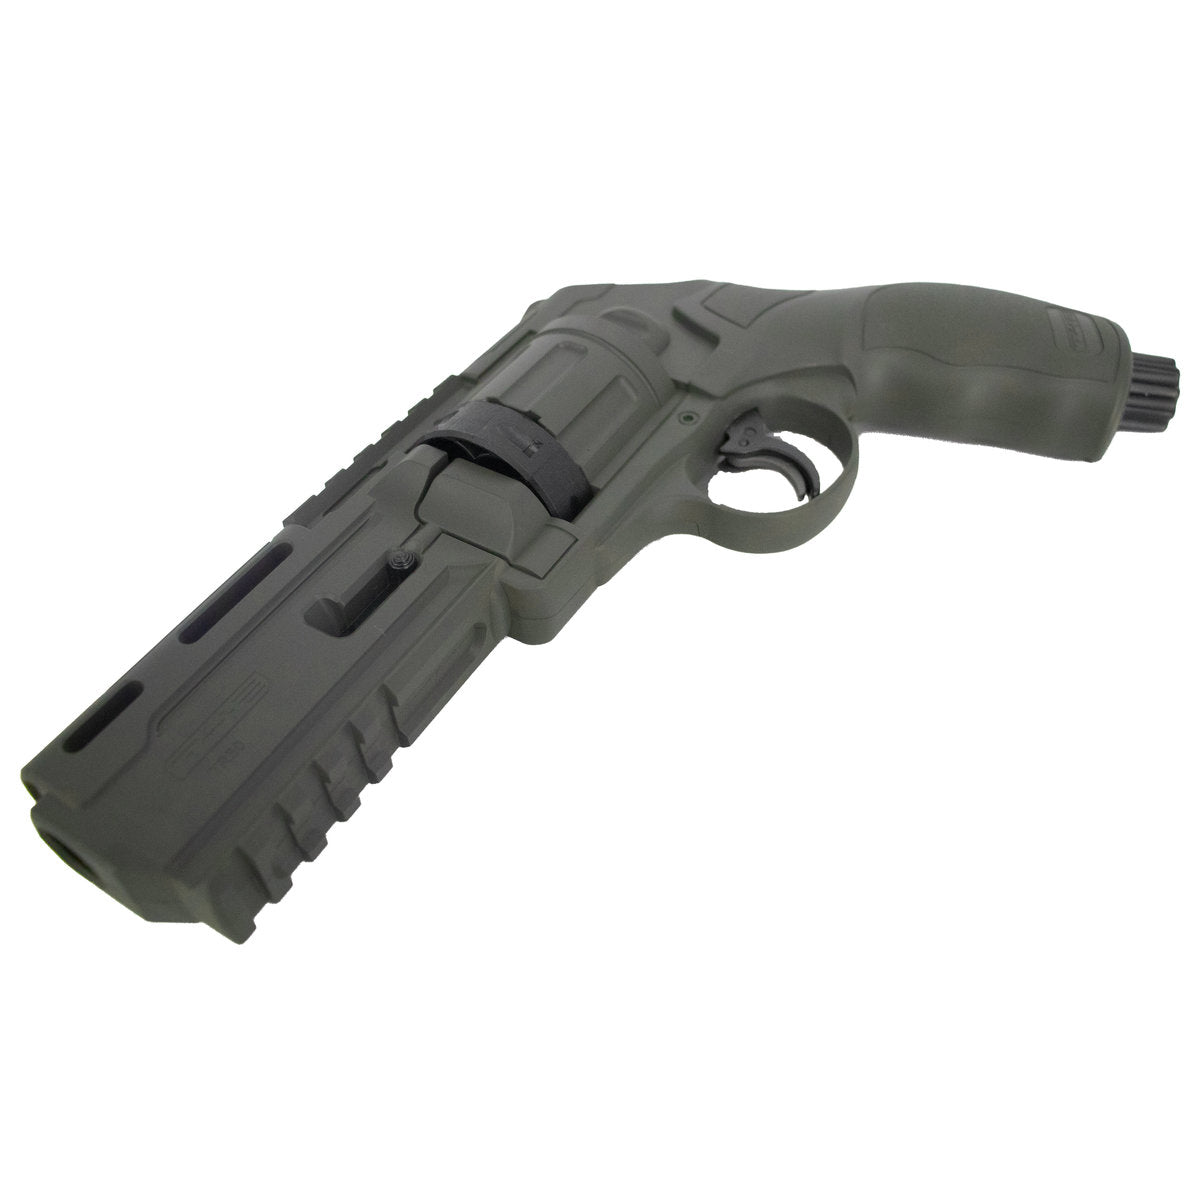 T4E Tr50 .50 Caliber Paintball Revolver By Umarex - Combat Grey